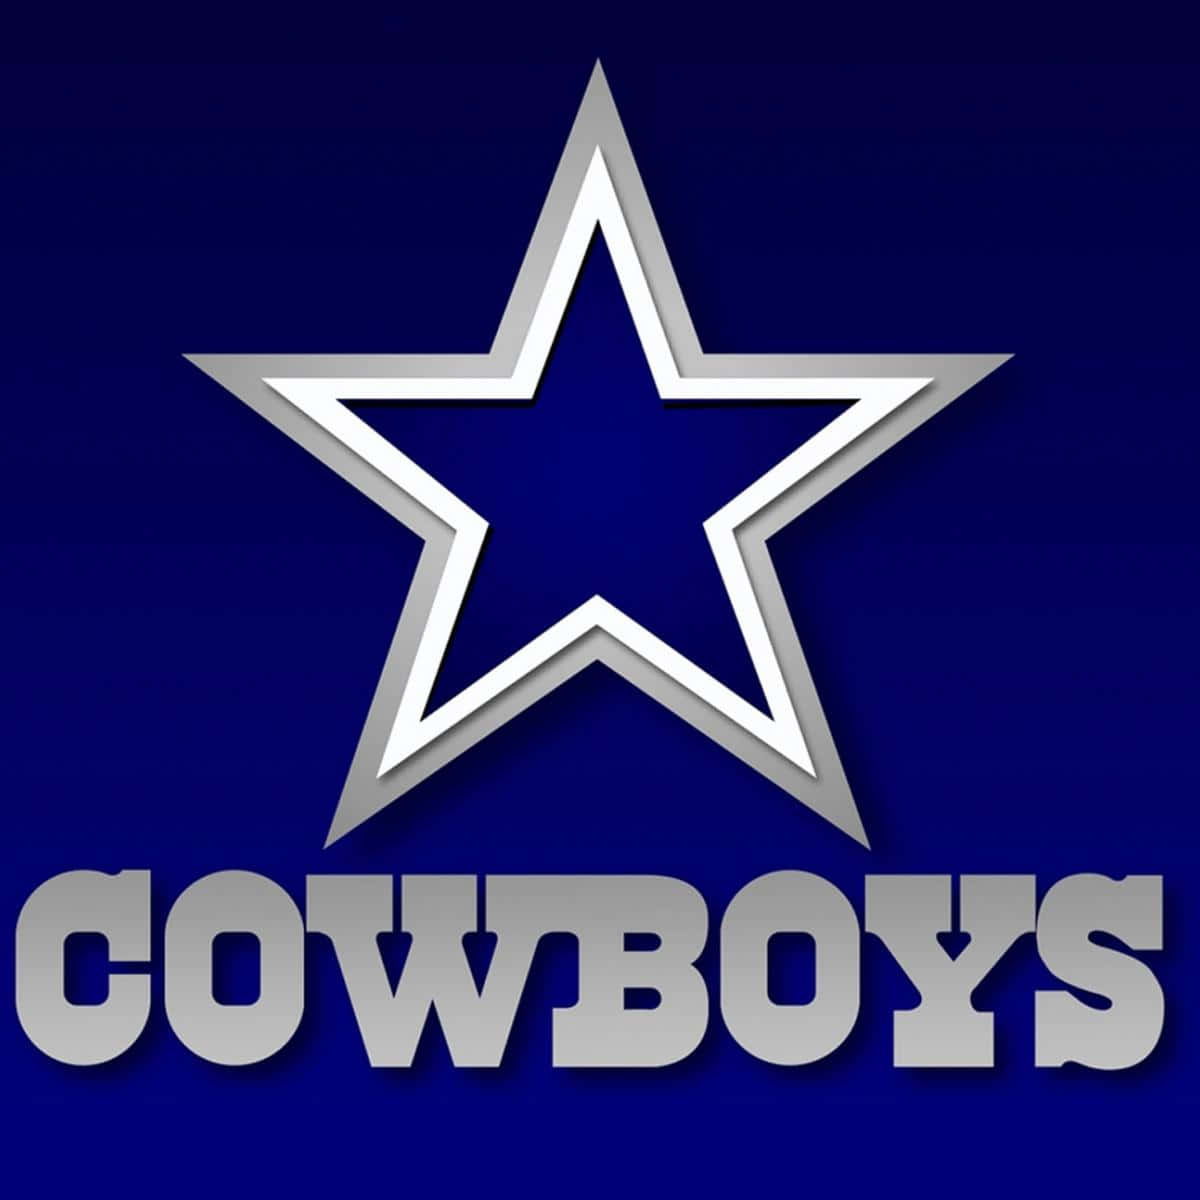 Dallas Cowboys Pictures